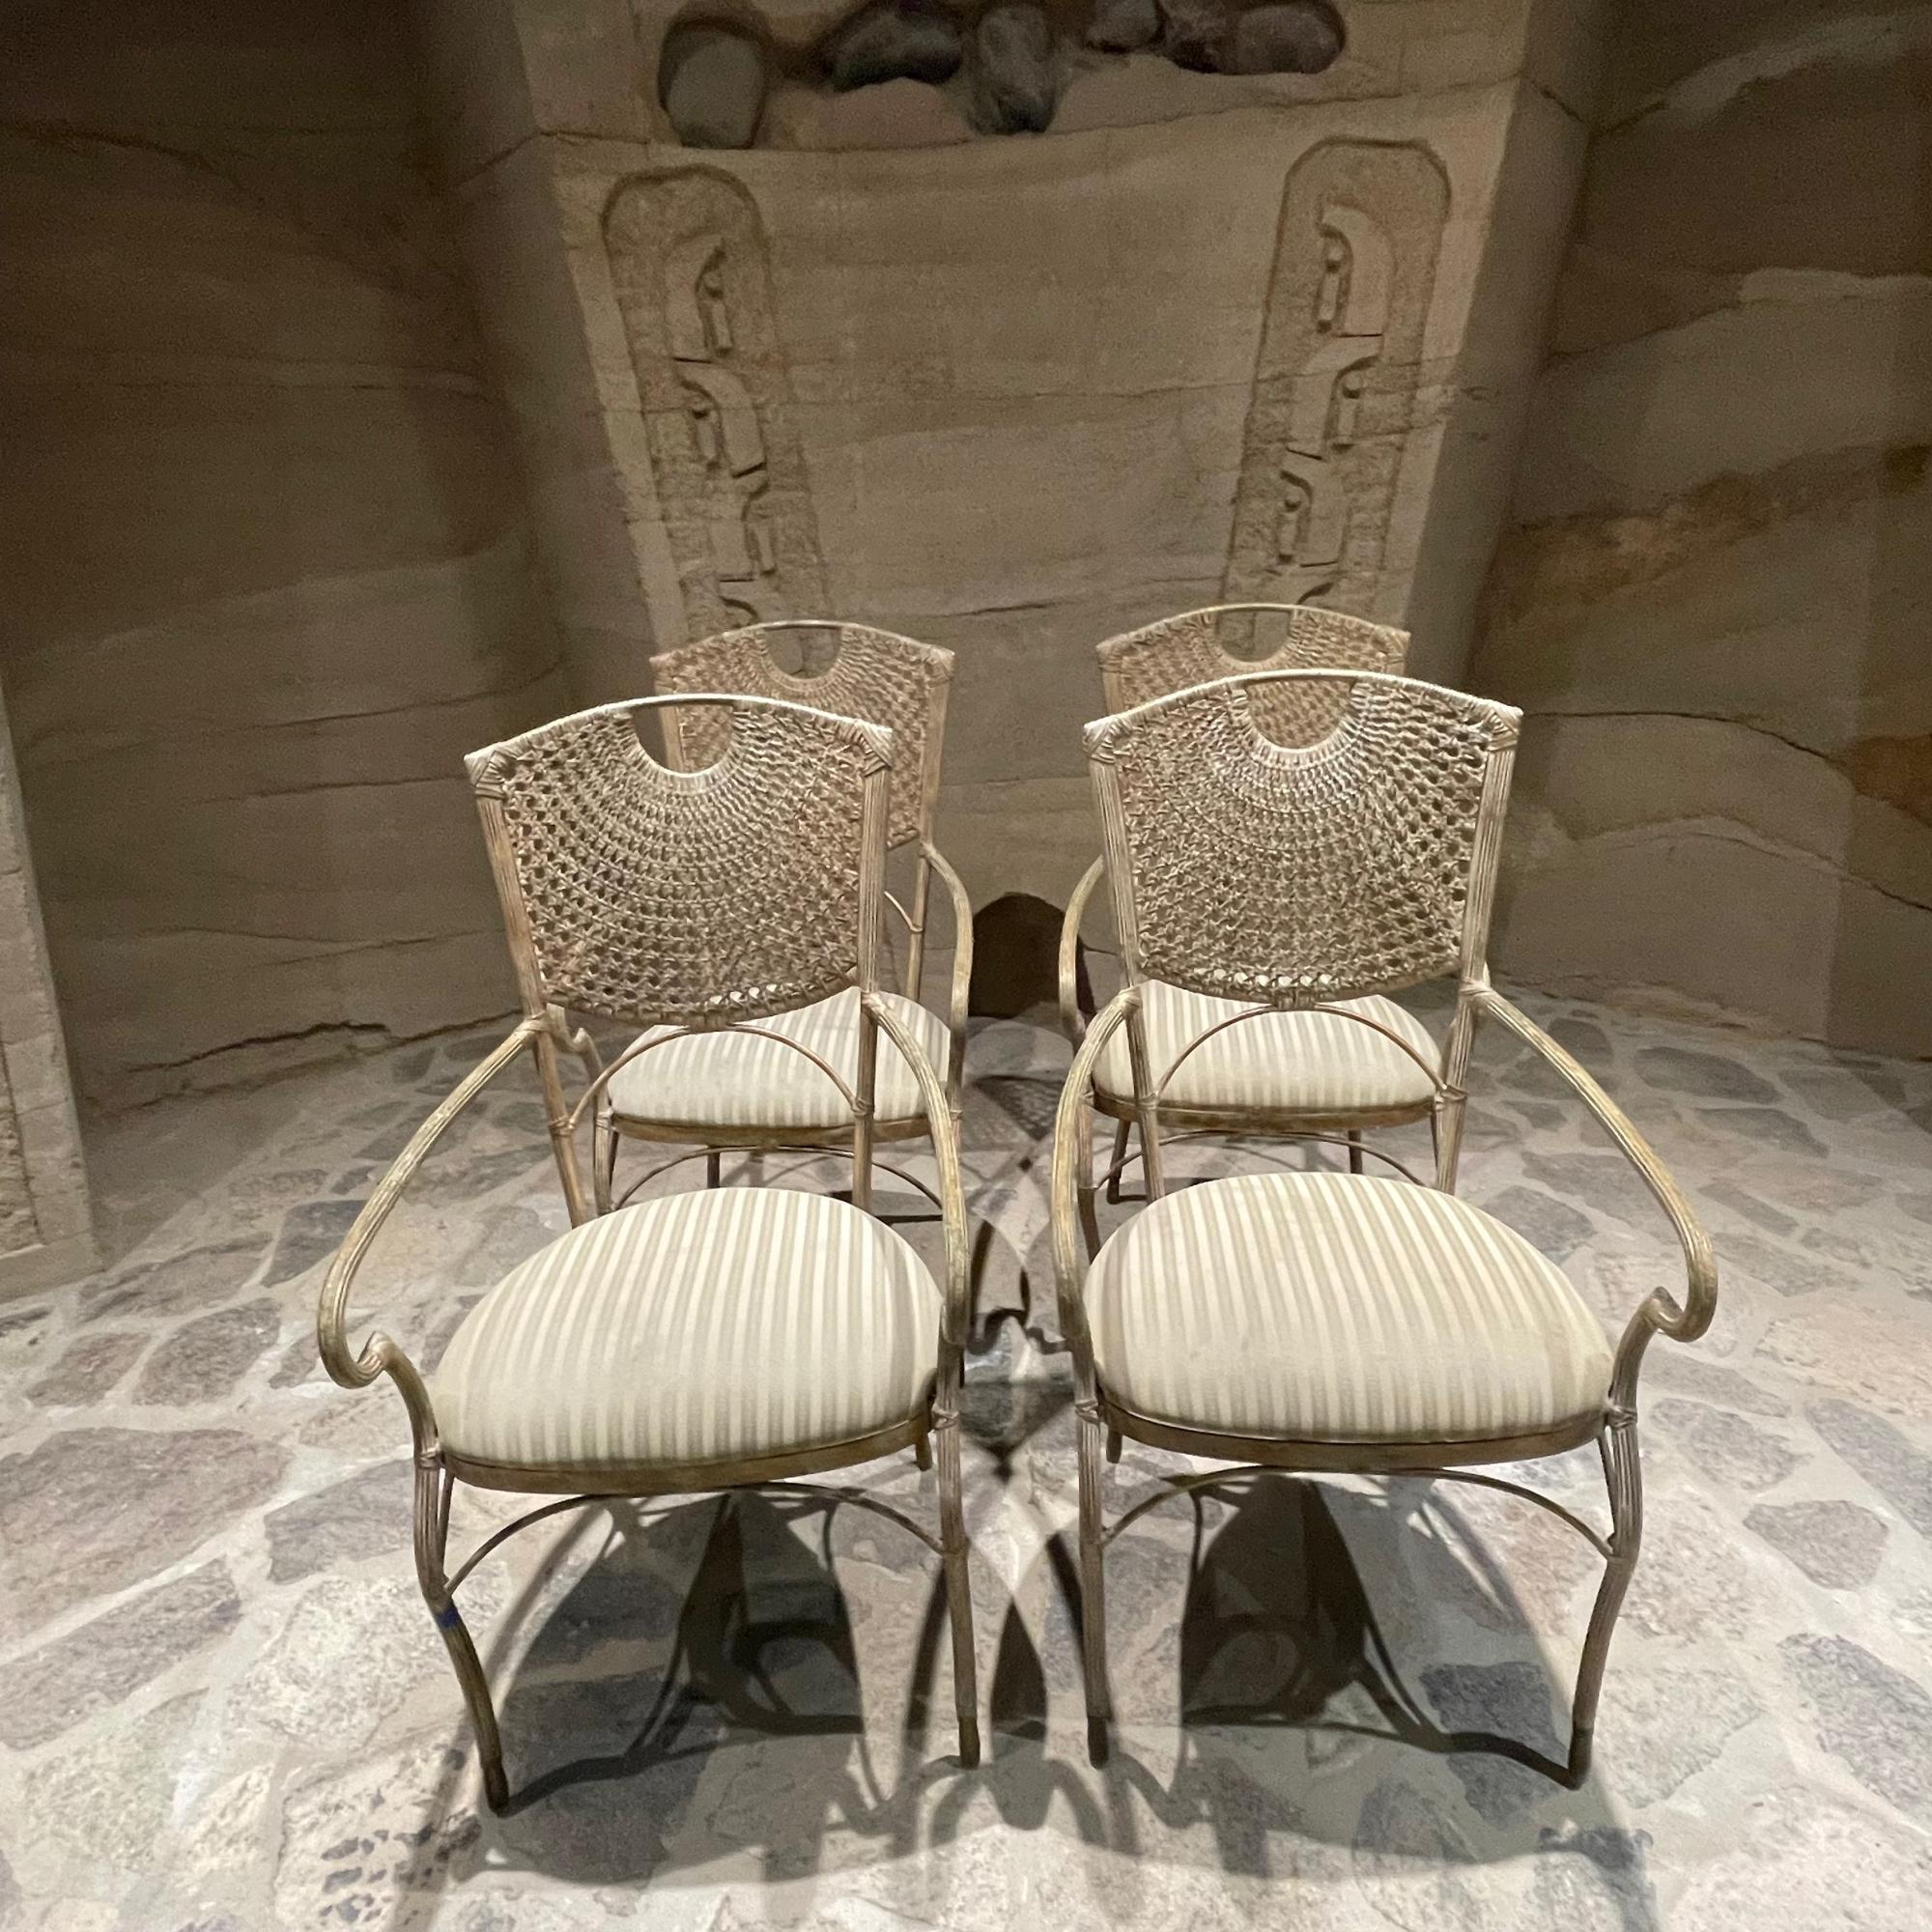 Ensemble de quatre chaises de salle à manger sculpturales en rotin tressé à la main avec dossier en treillis 
Cadre en fer. Une étonnante élégance de style régence.
pas de Label.
Dans le style de Maitland Smith et McGuire. 
Conserve la sellerie